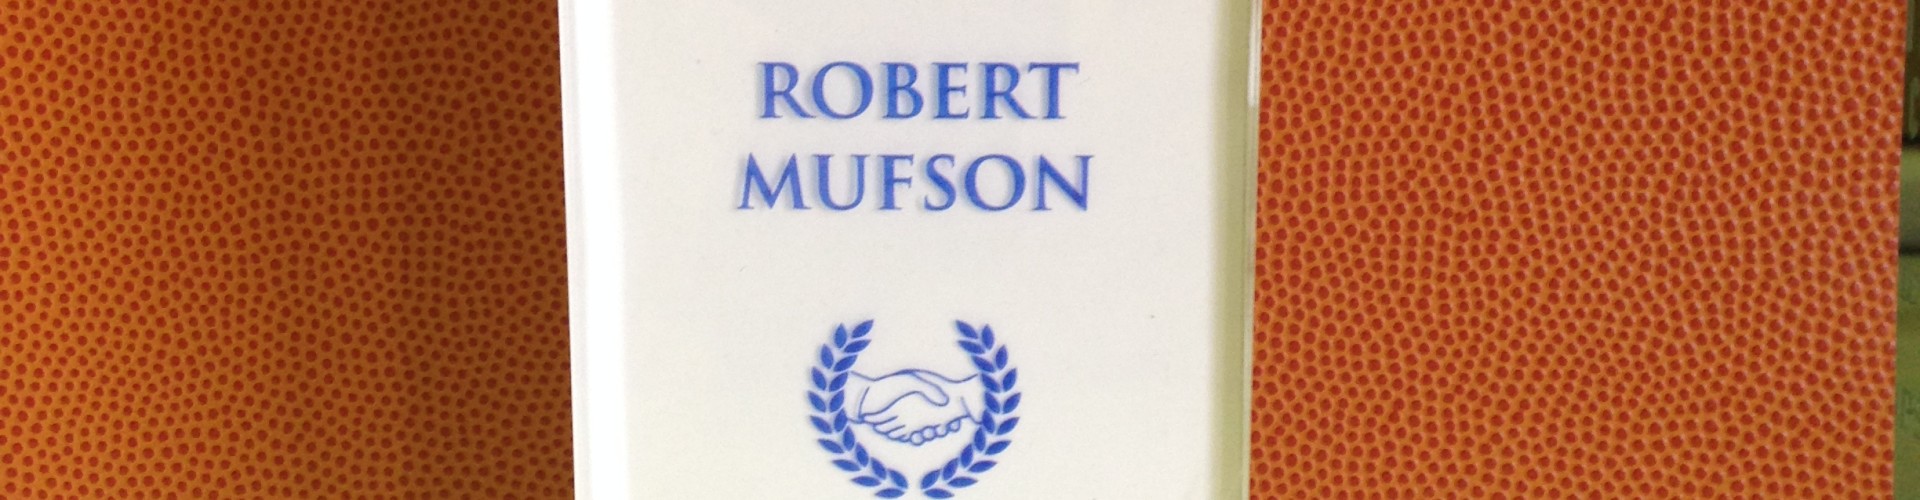 The Robert Mufson Sportsmanship Award Winners